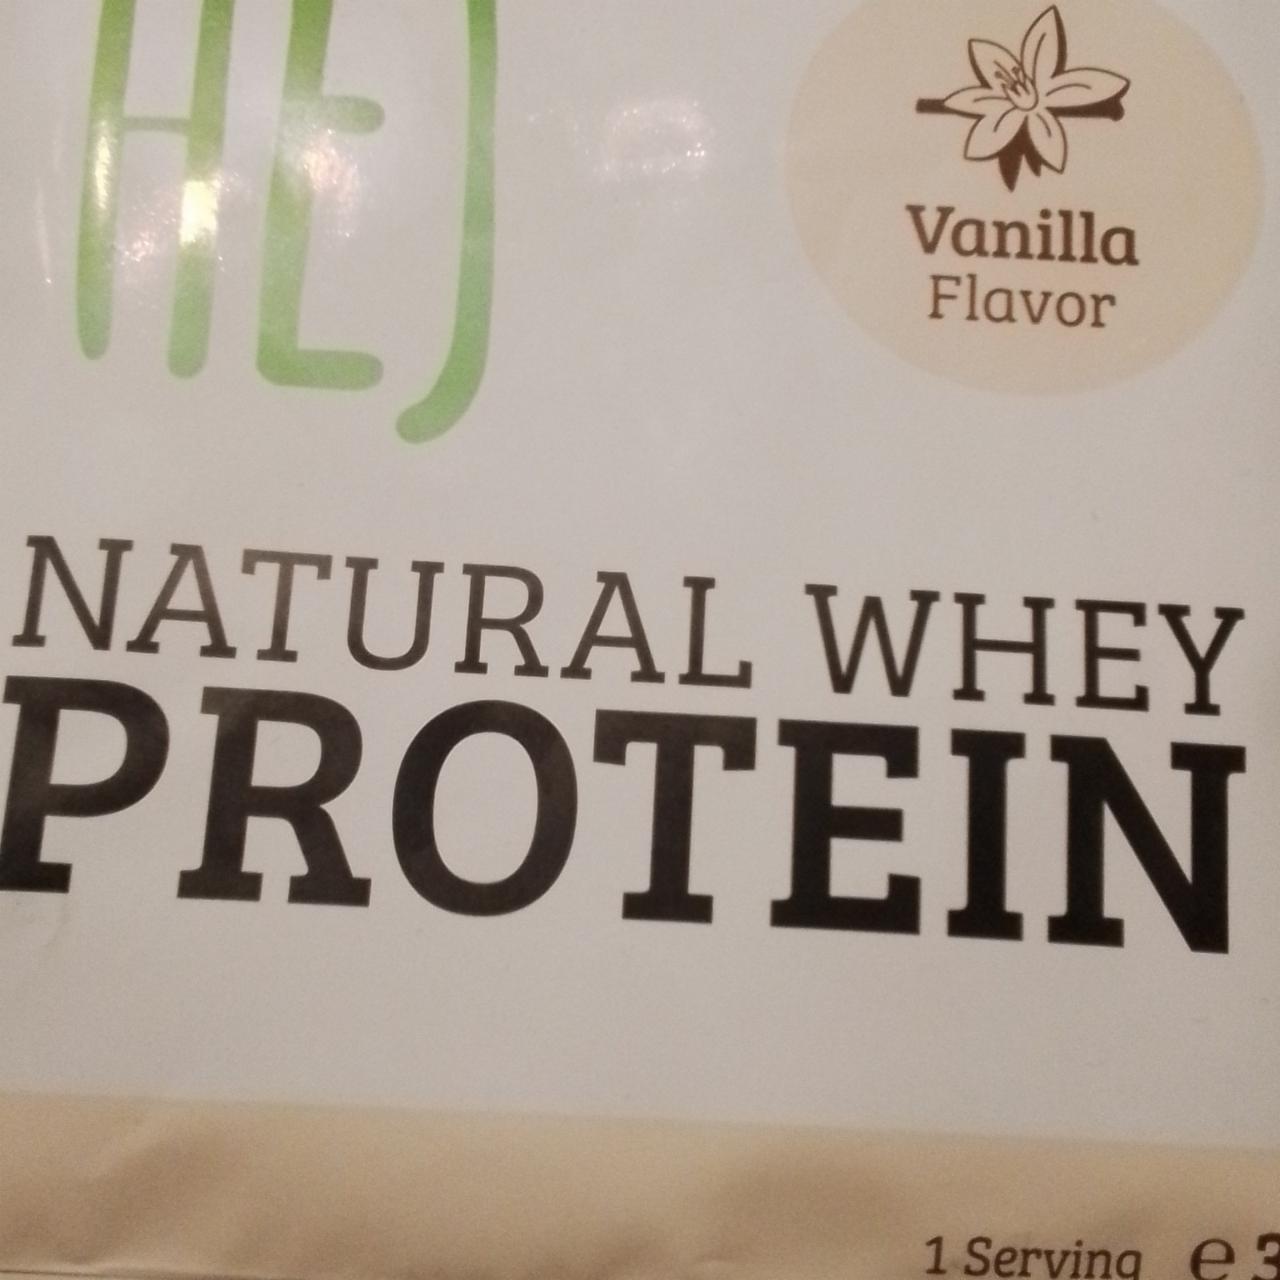 Zdjęcia - Natural Whey Protein vanilla flavor Hej